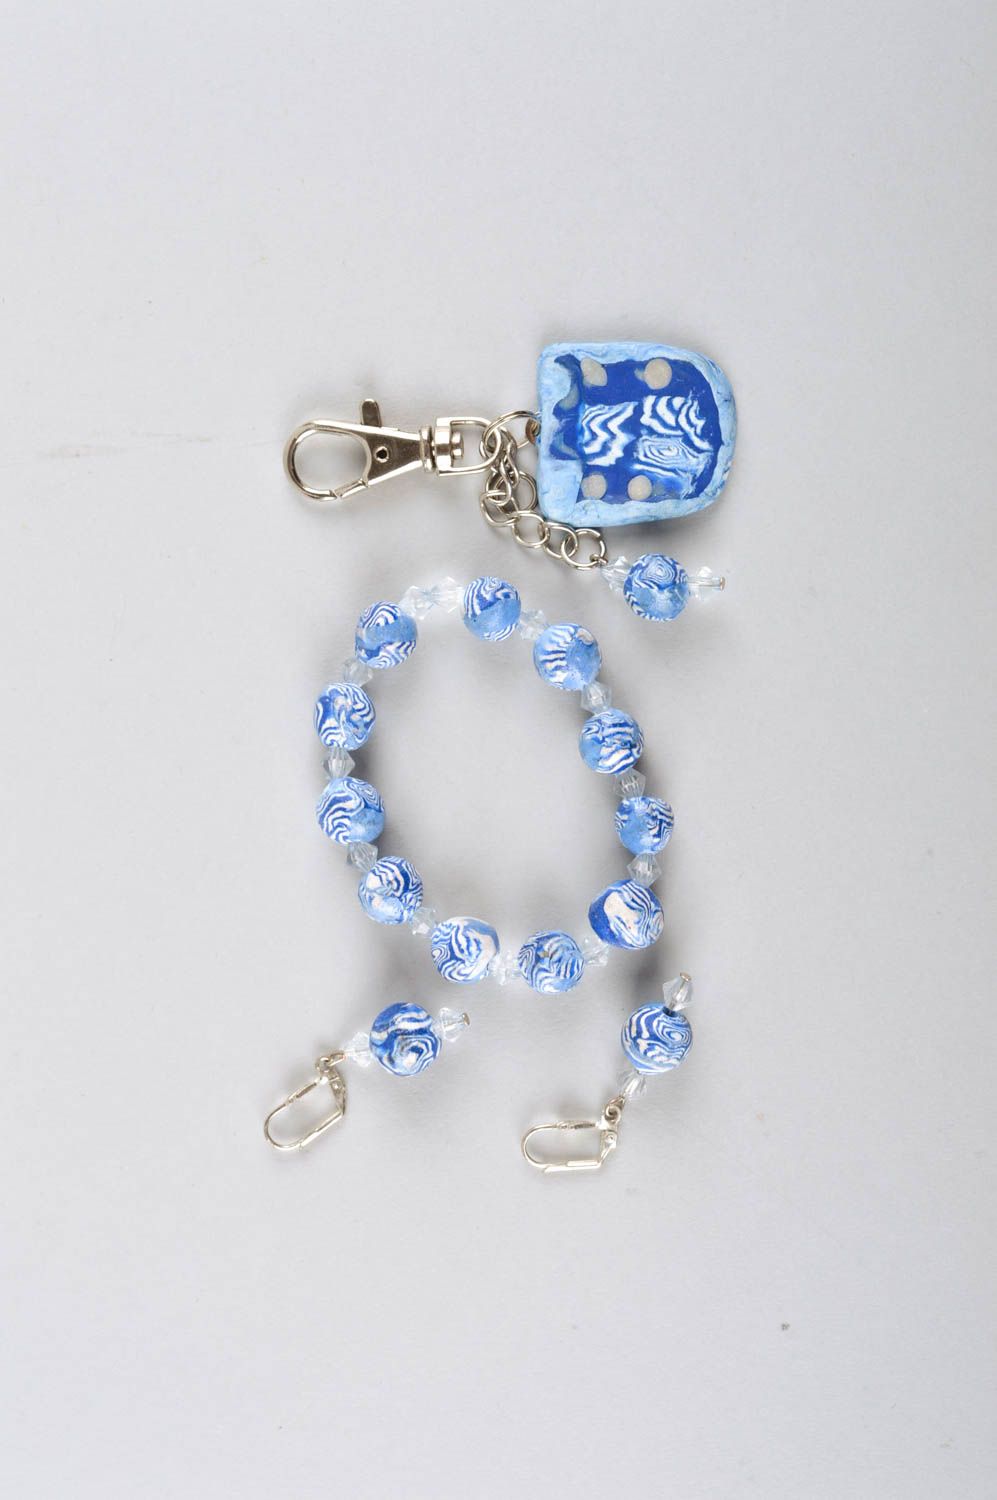 Handmade jewelry set wrist bracelet dangling earrings unique keychain gift ideas photo 2